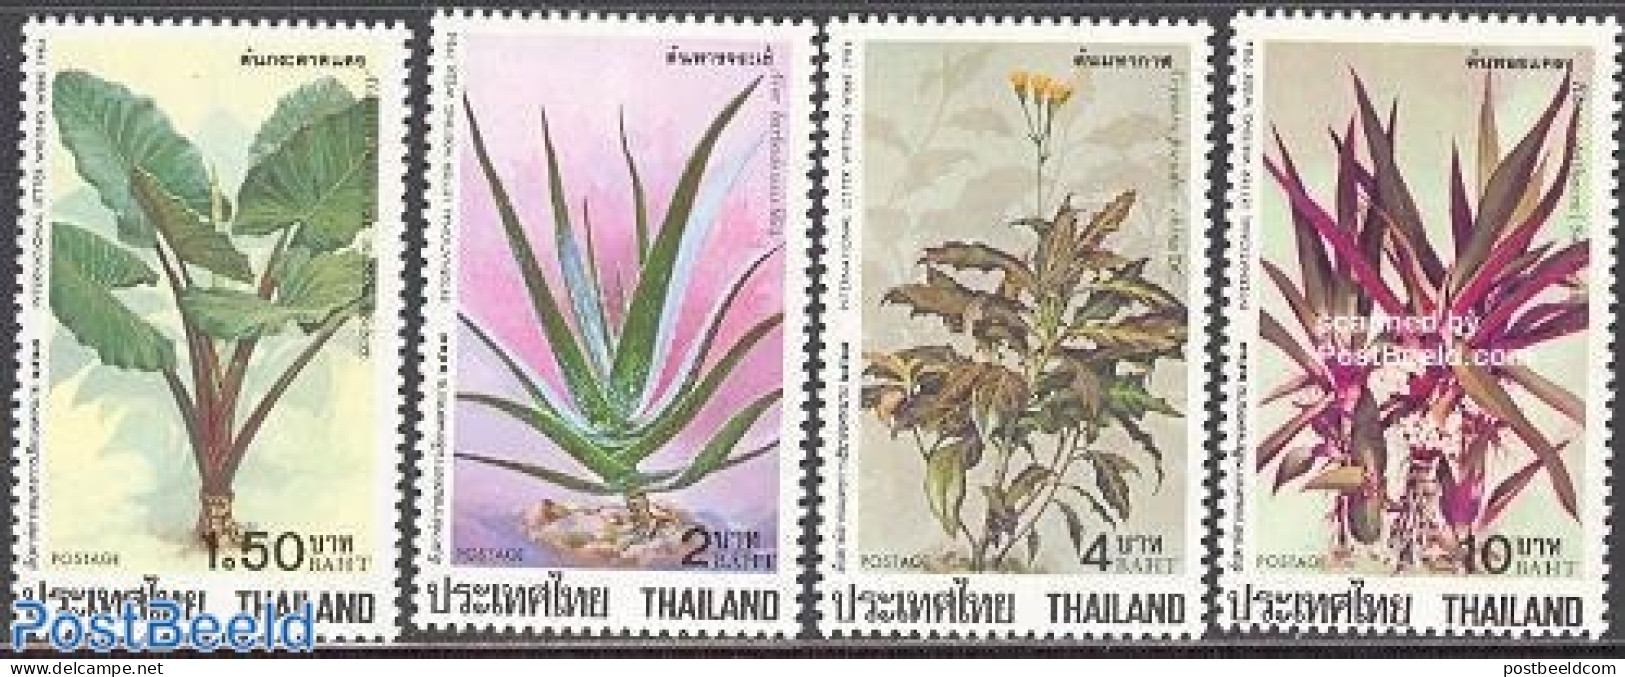 Thailand 1984 Letter Week, Medical Plants 4v, Mint NH, Health - Nature - Health - Flowers & Plants - Thaïlande